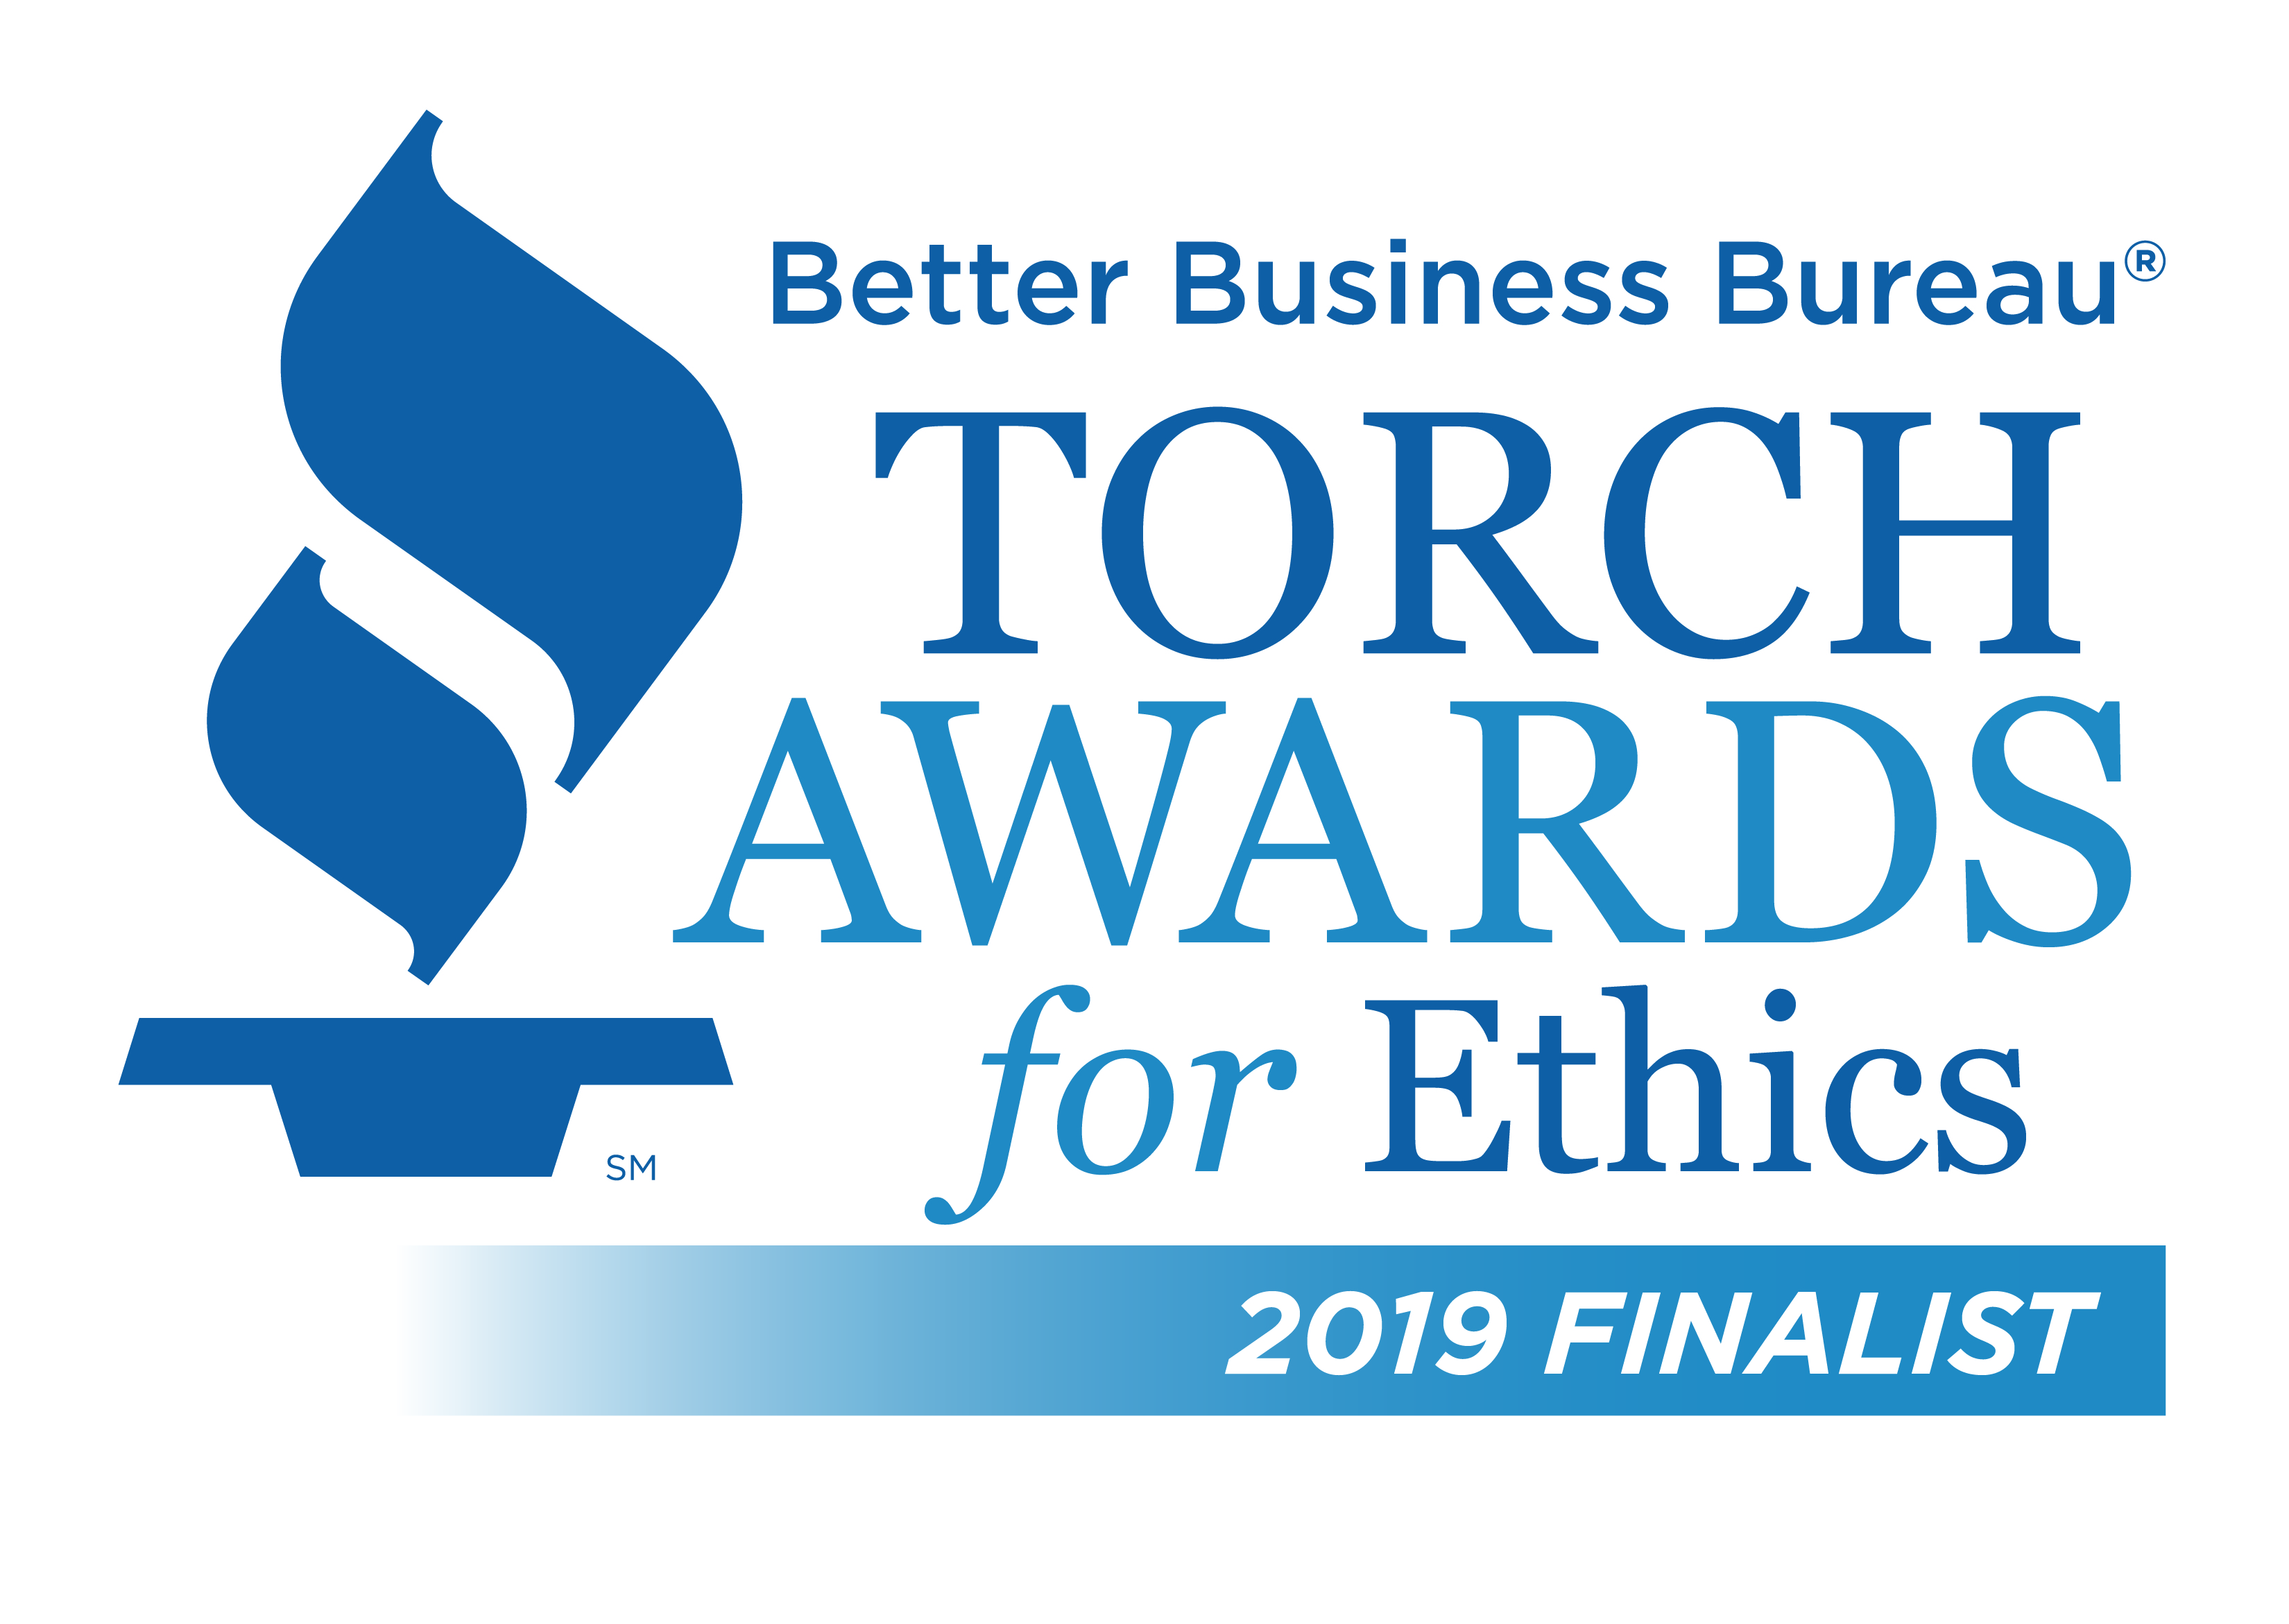 Better Business Bureau Torch Awards for Ethics 2019 Finalist logo